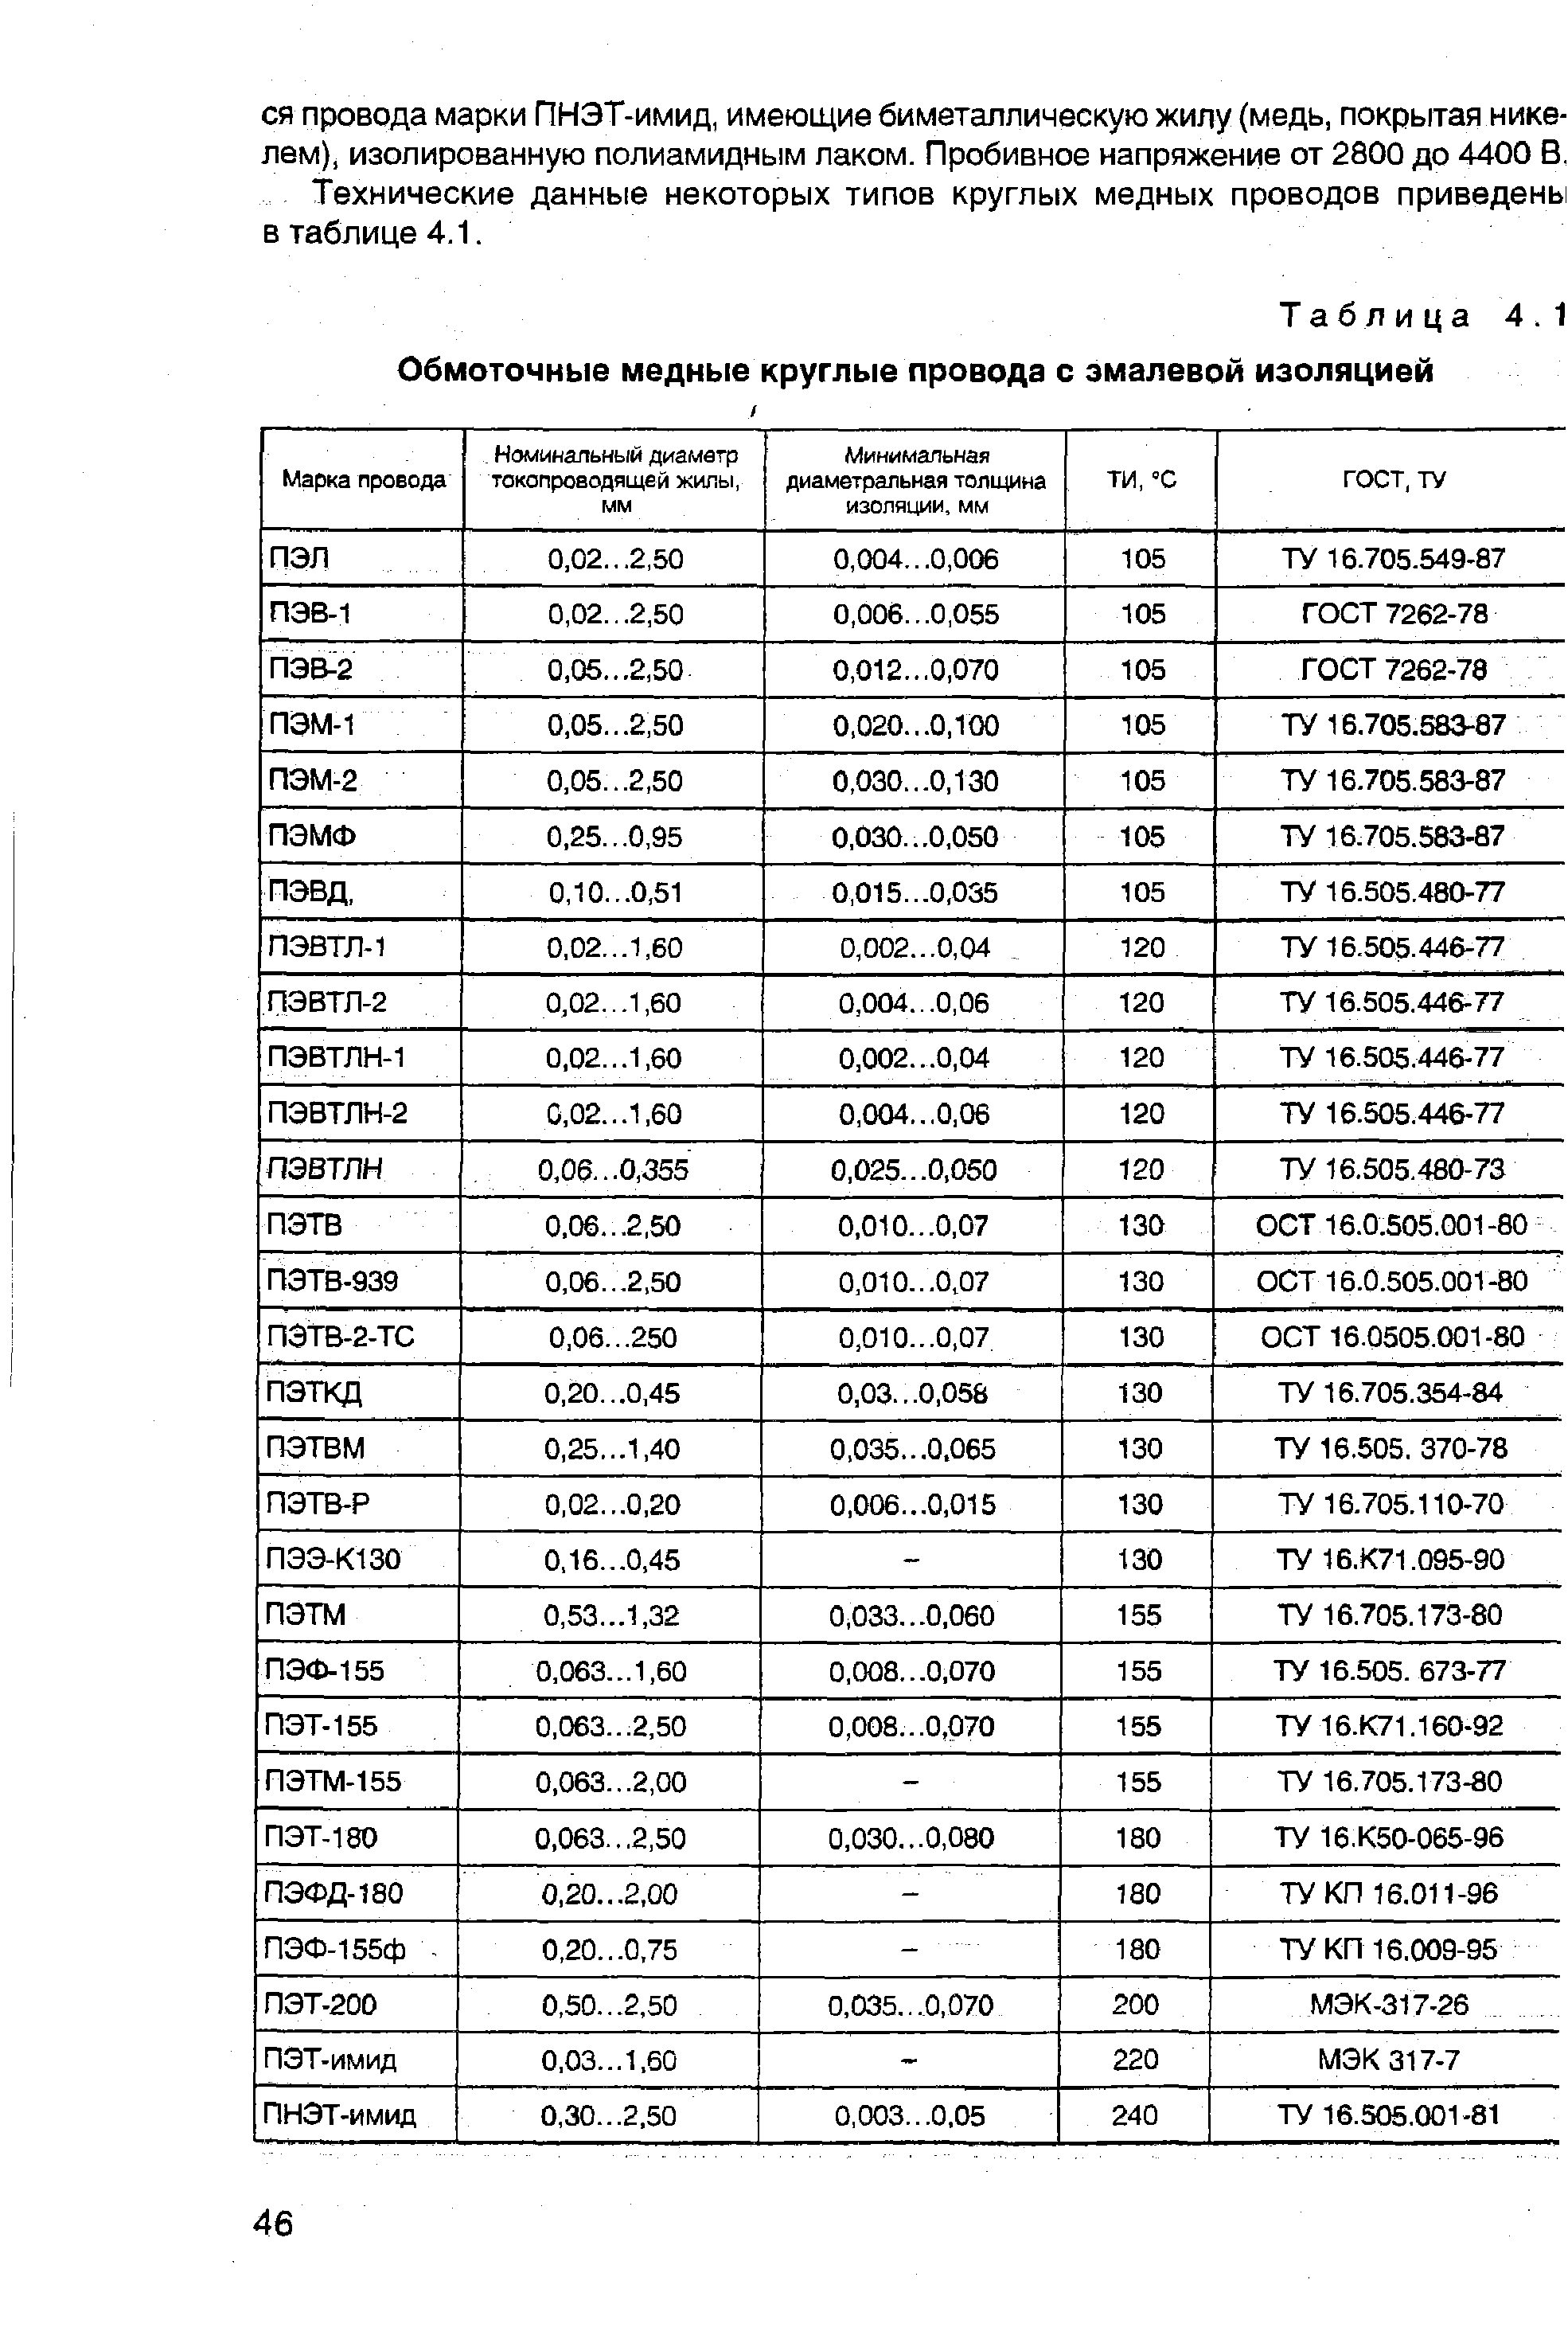 Таблица 4.1 Обмоточные медные круглые провода с эмалевой изоляцией
